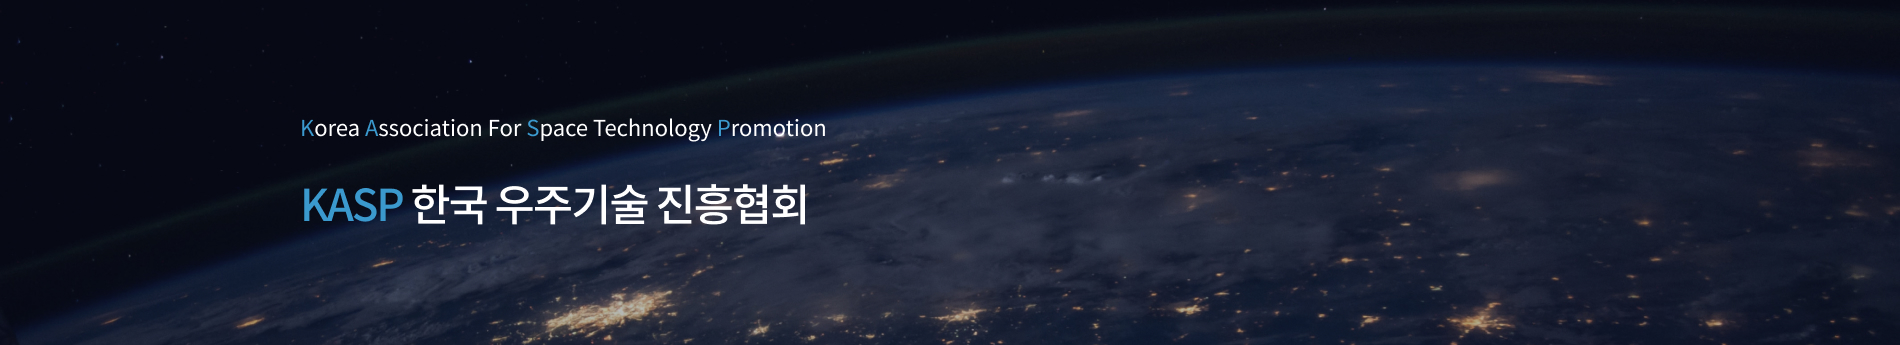 korea association for space technology promotion - 국내 우주 산업의 진흥을 위한 전문인 협회 KASP 한국 우주기술 진흥협회